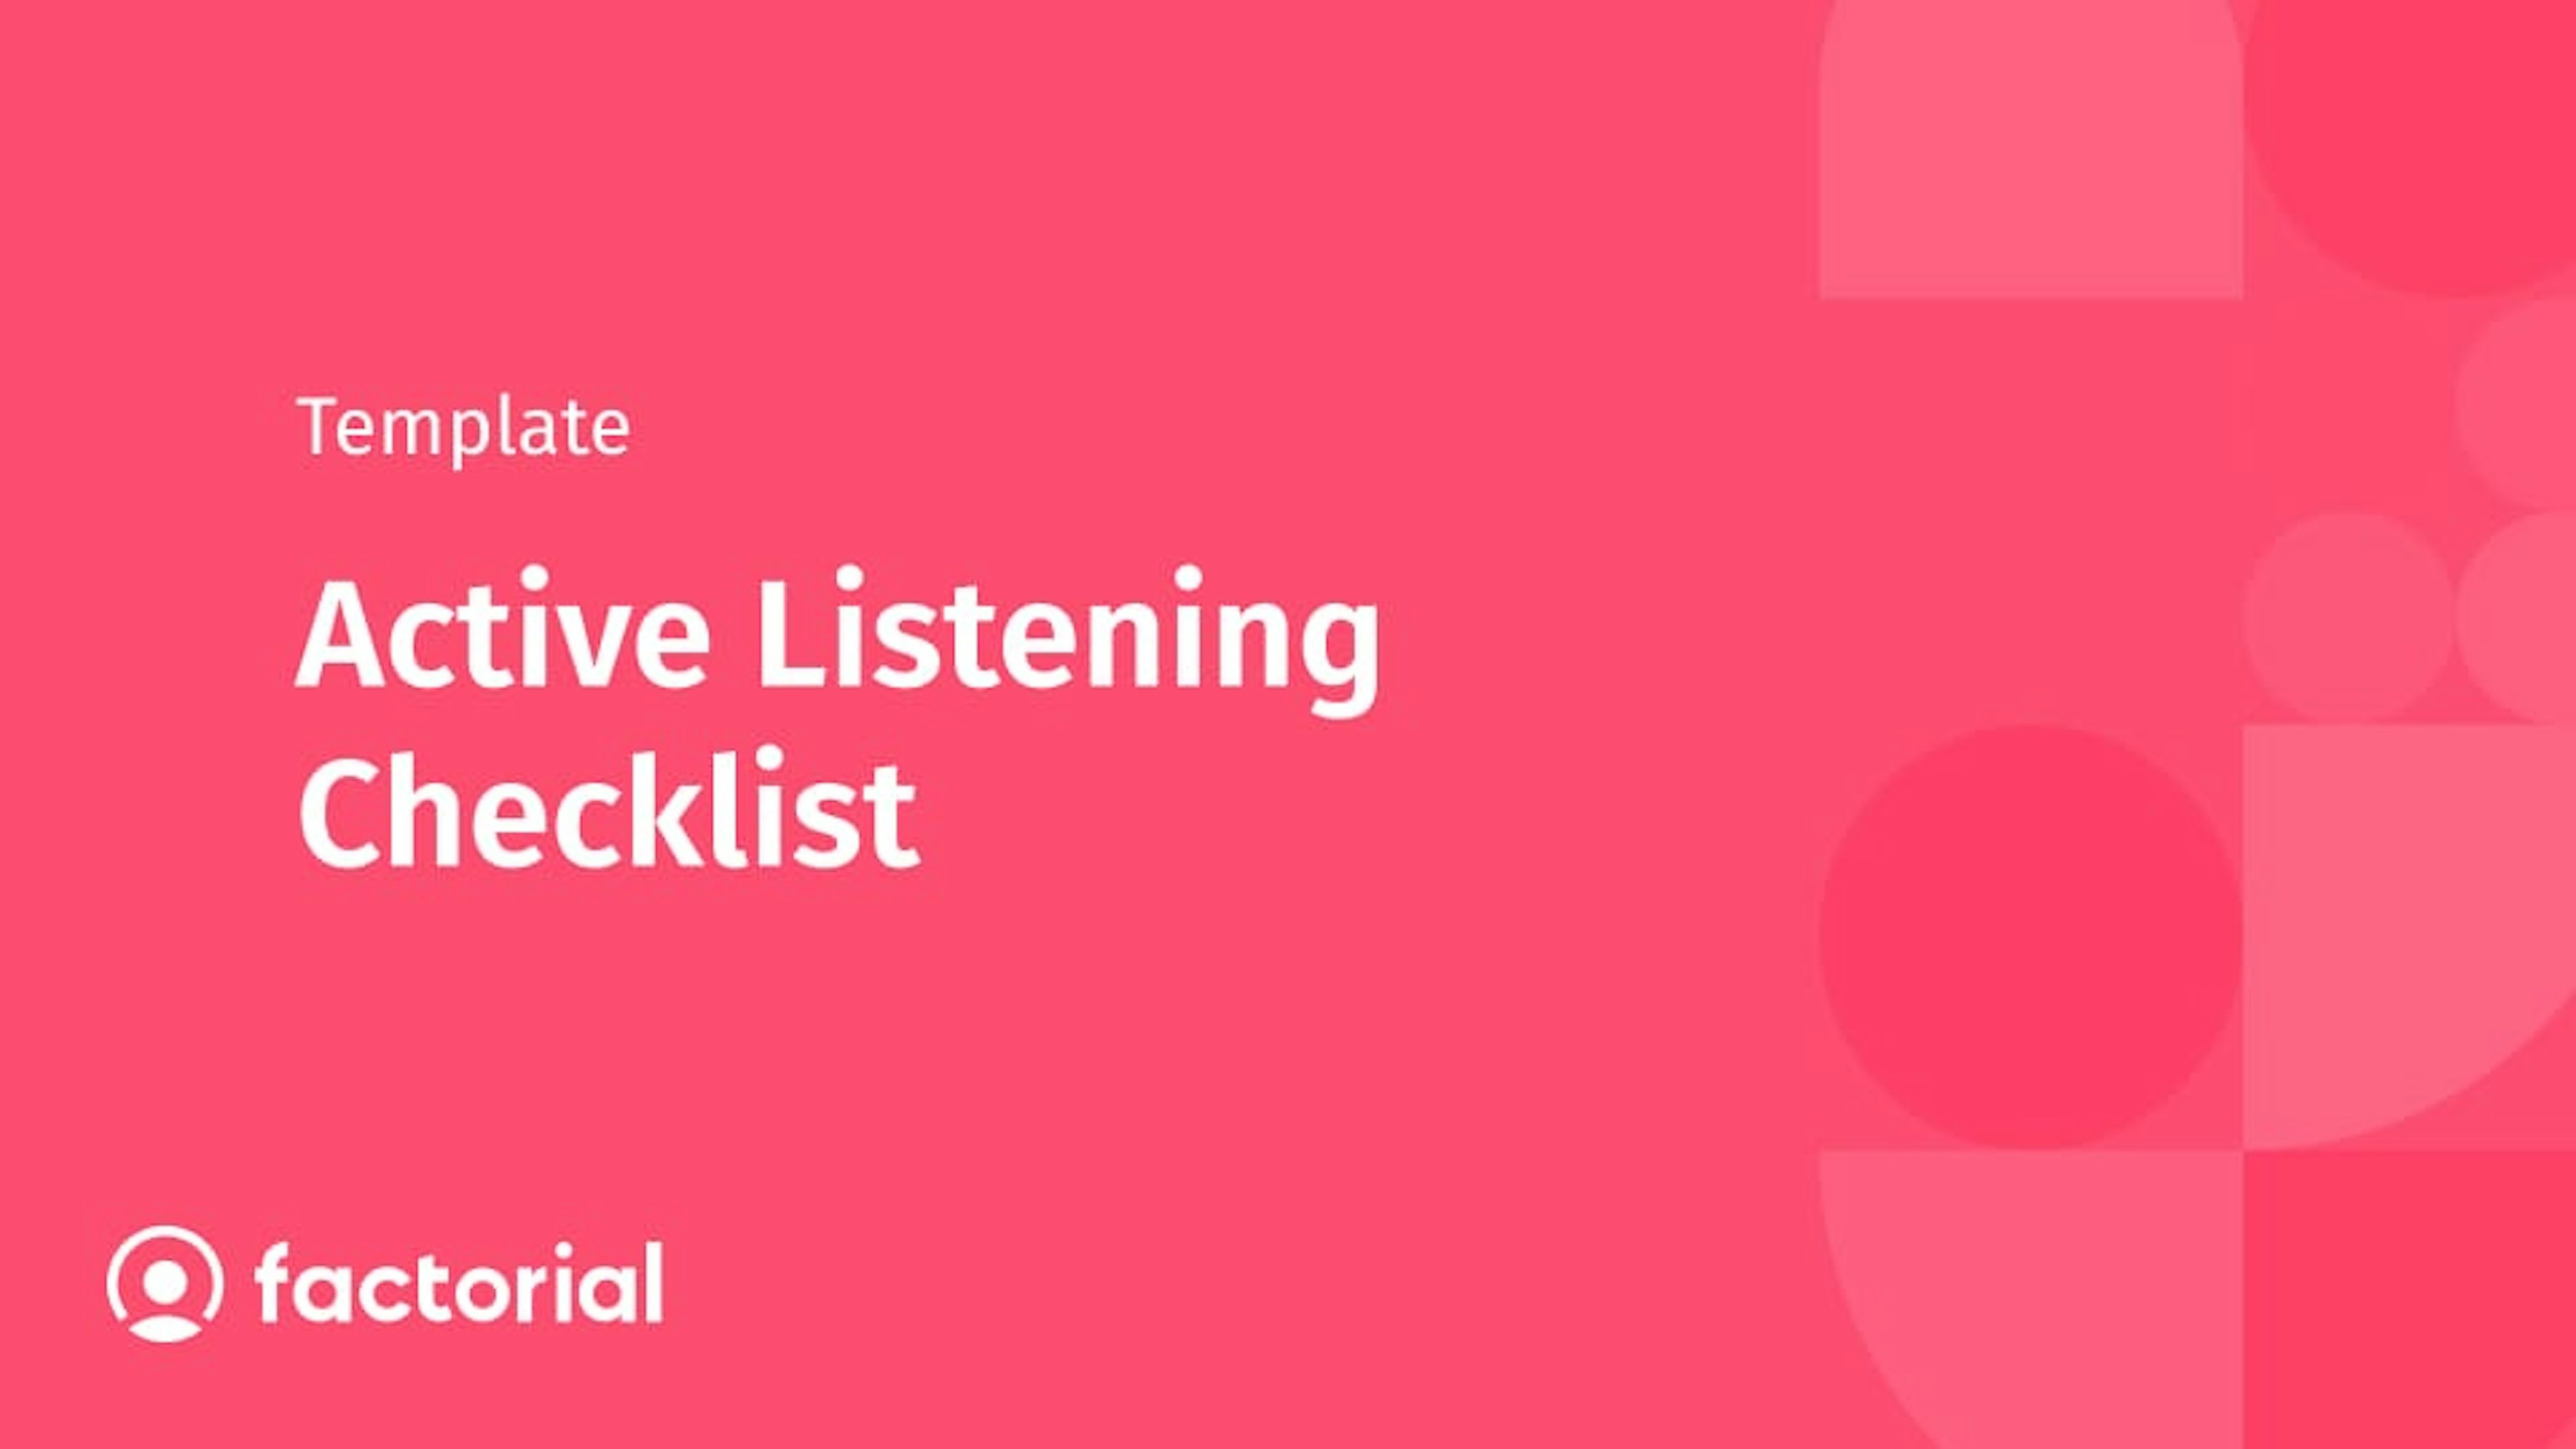 Active Listening Checklist